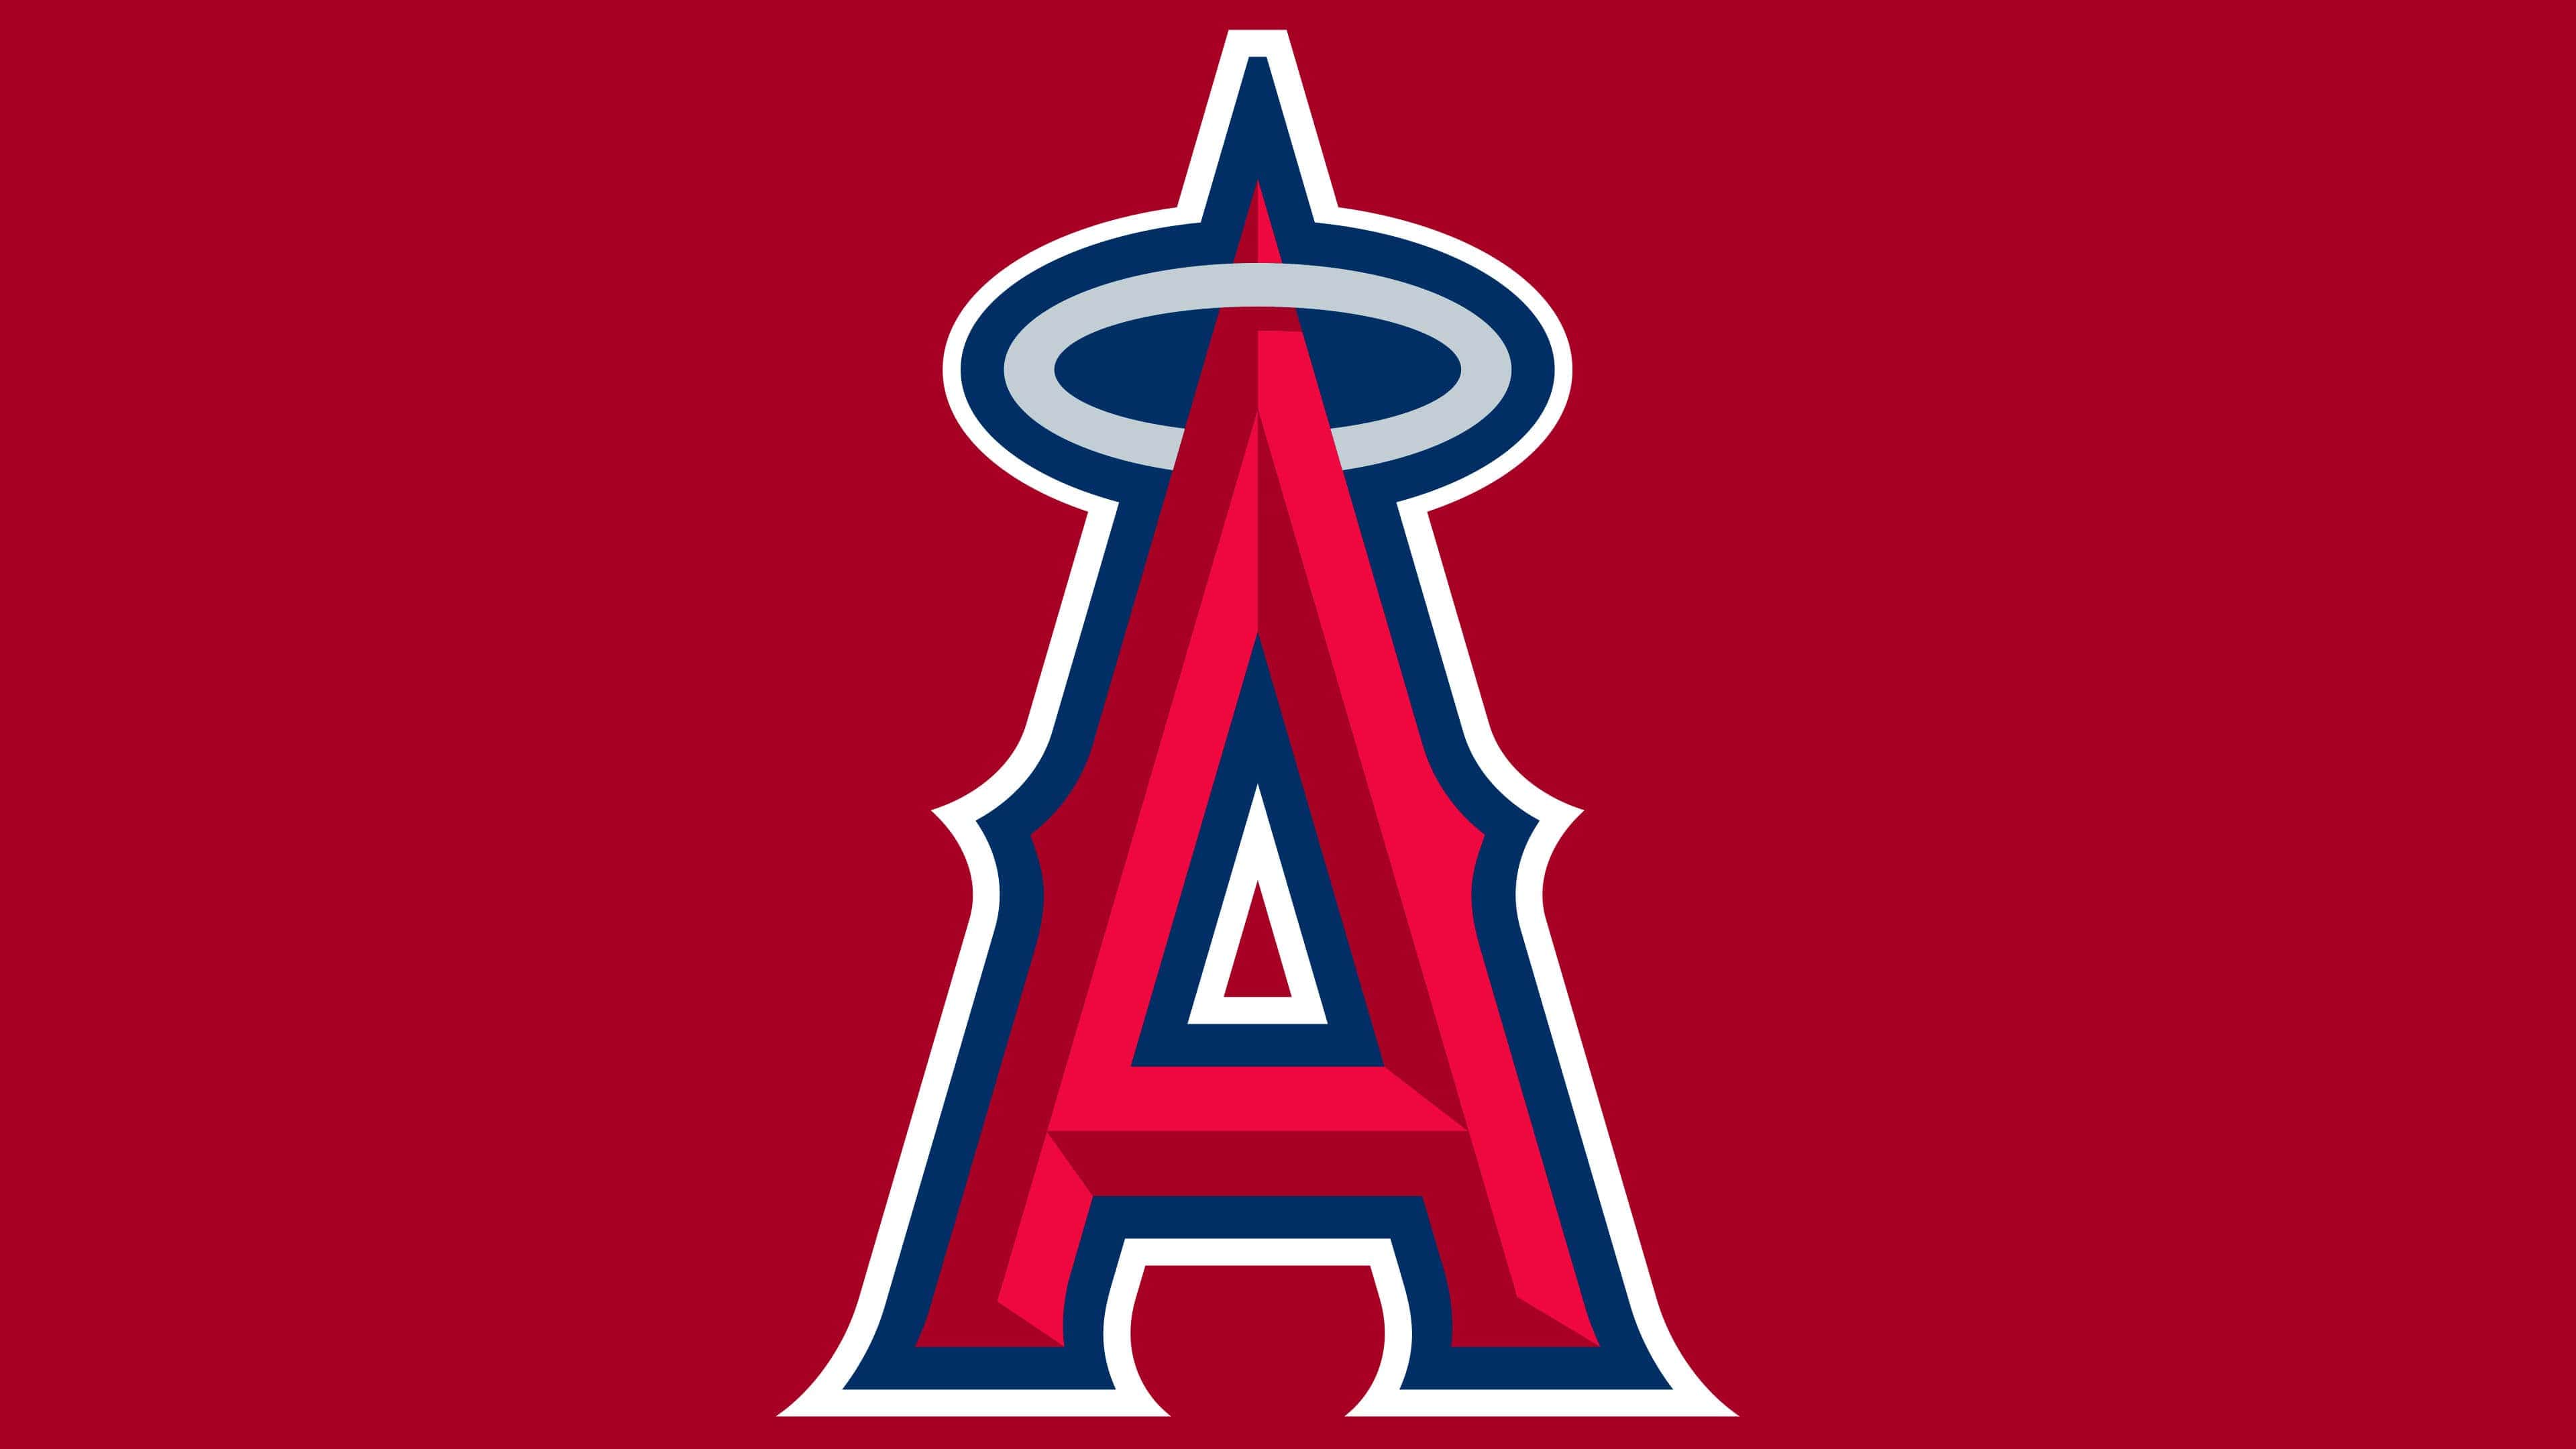 Go Angels !!!  Anaheim angels, Word mark logo, Anaheim